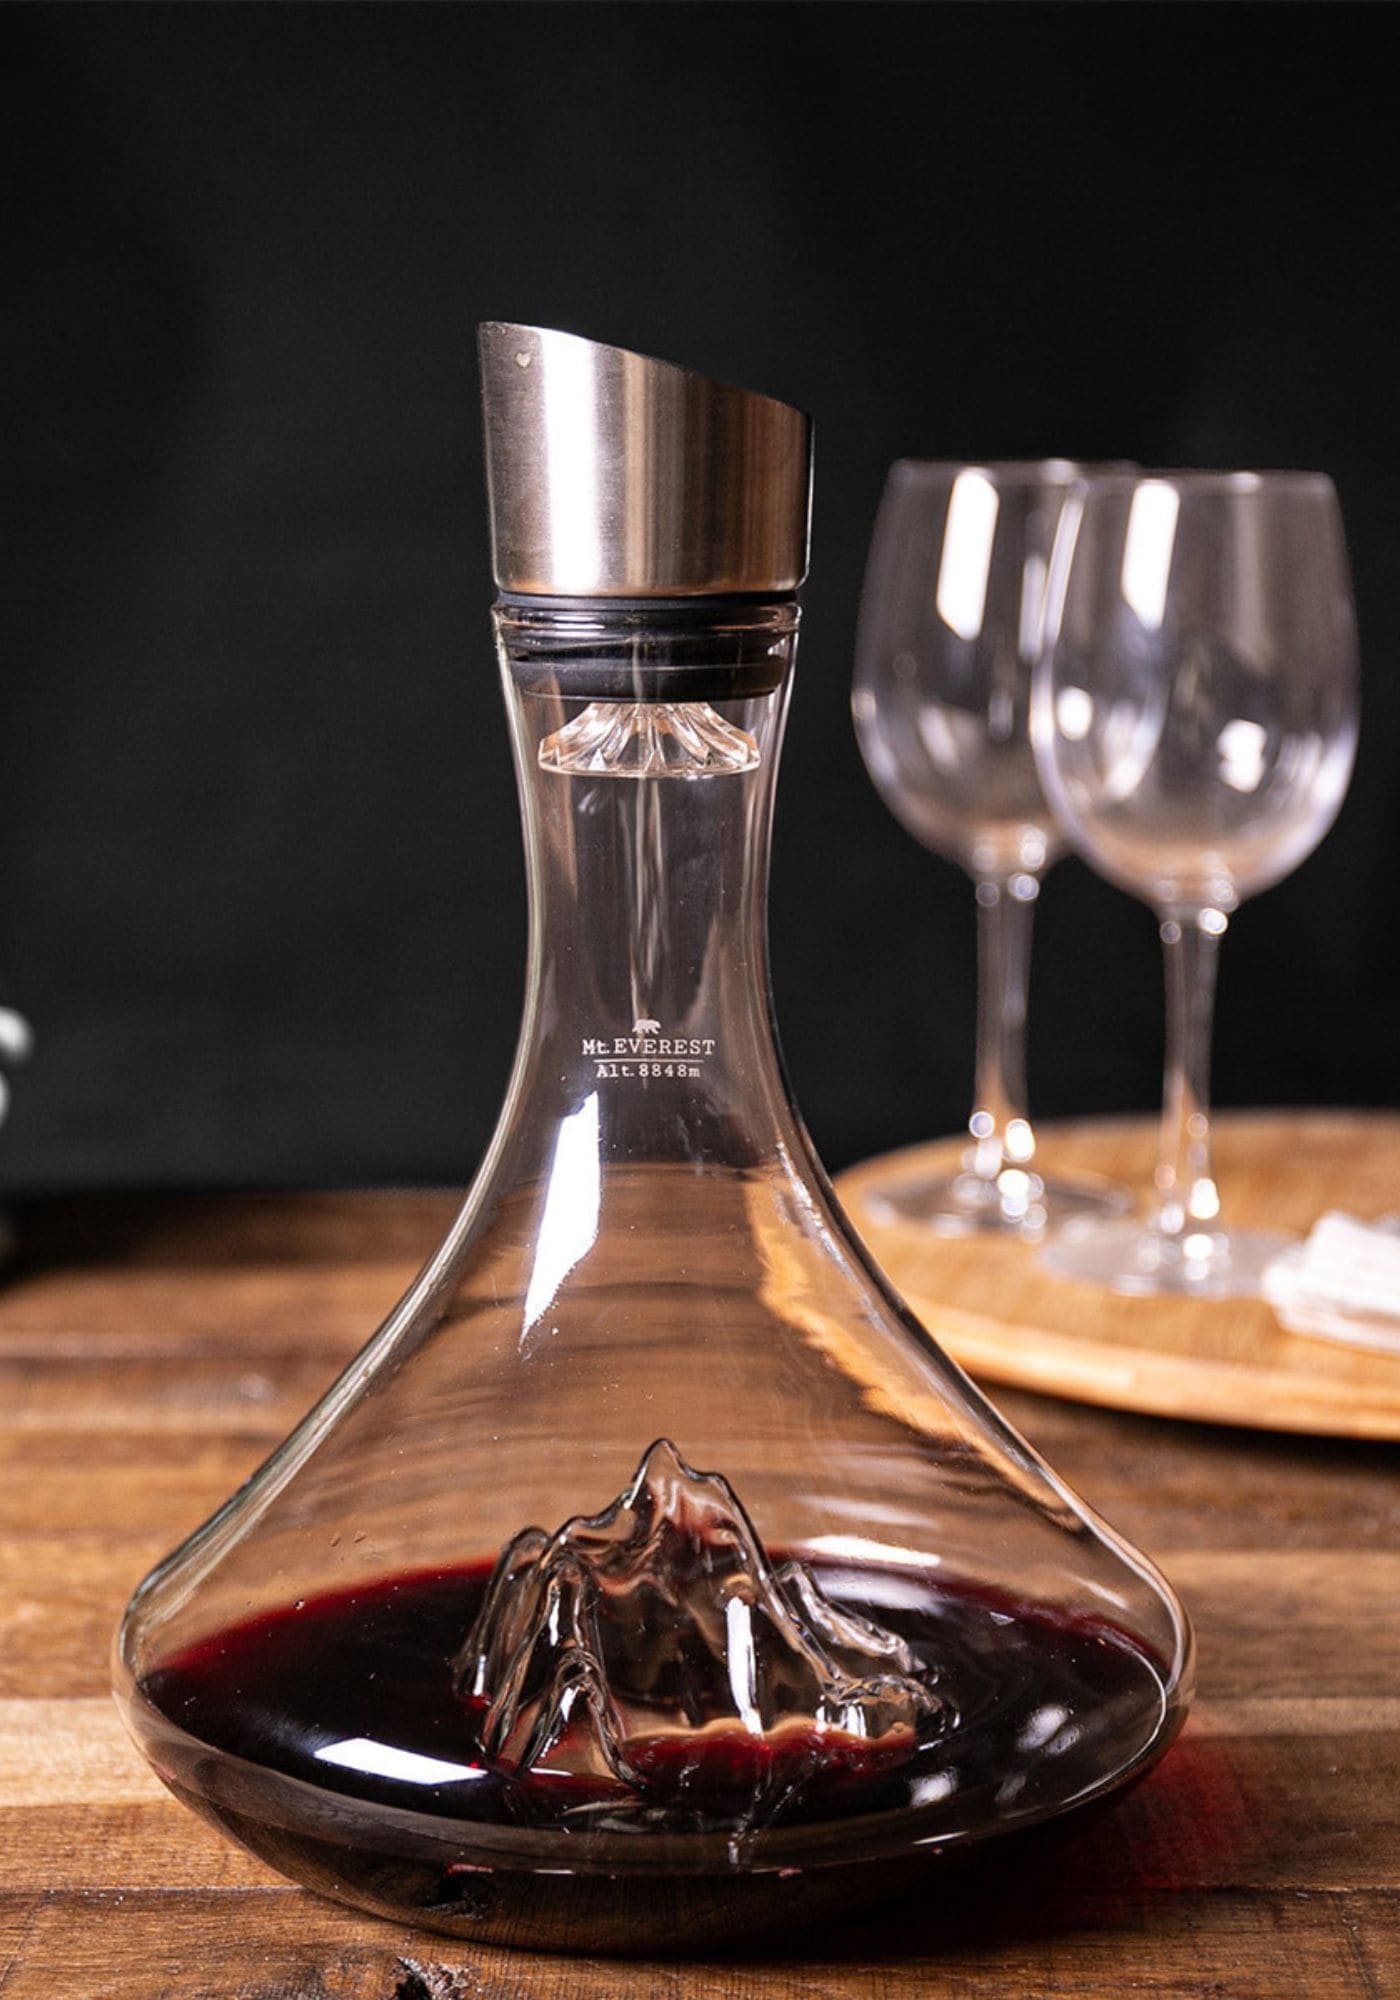 La carafe à vin en verre Mont Everest de chez Alaskan Maker est posée sur une table